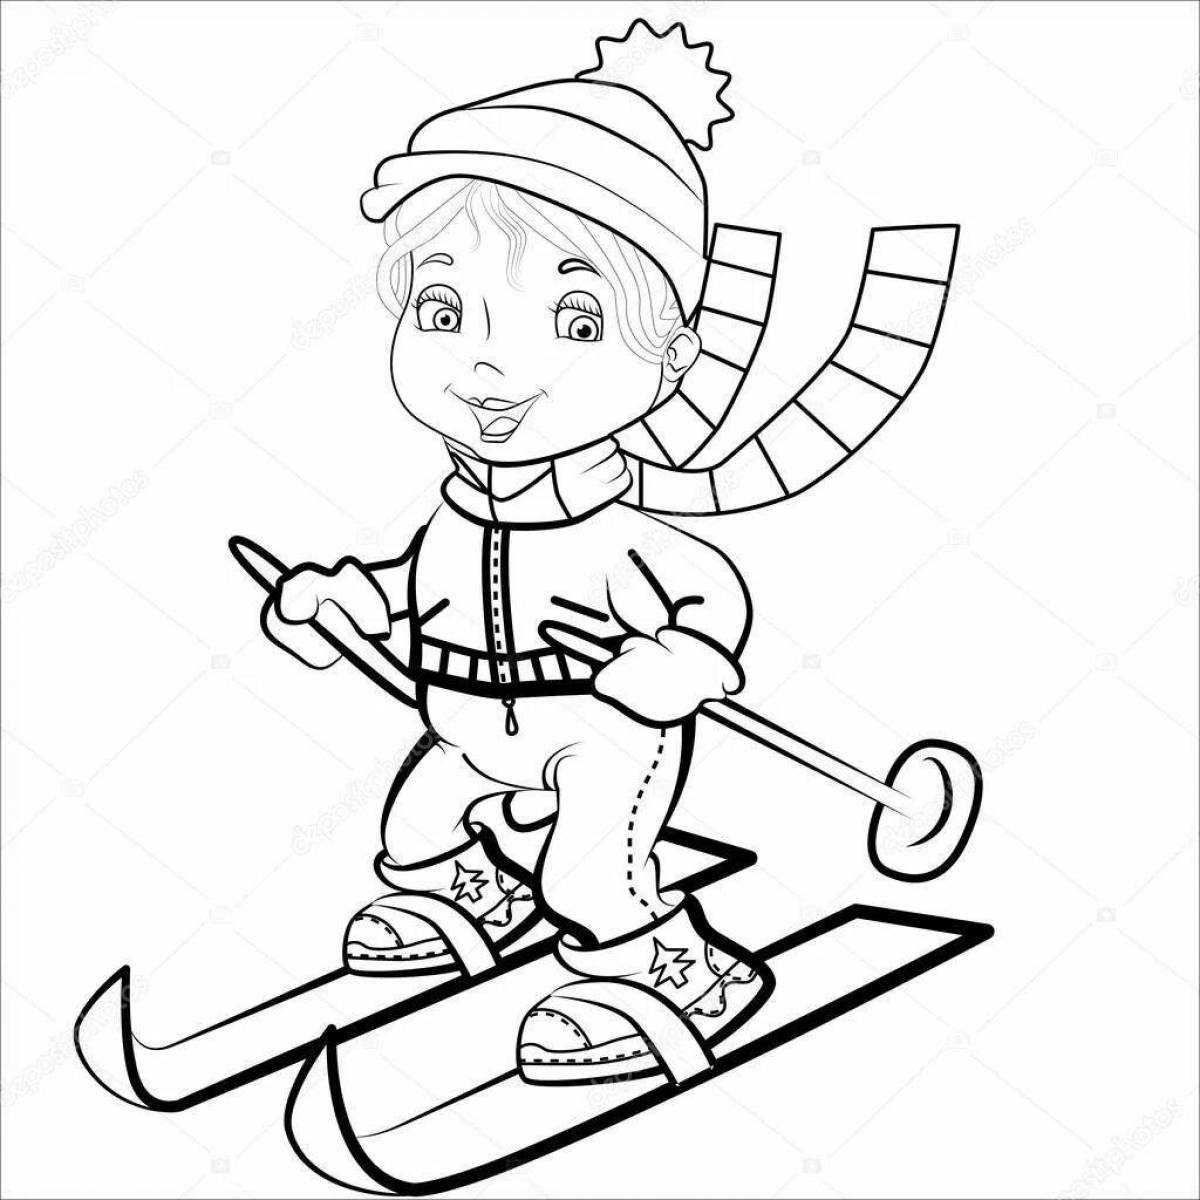 Динамичная раскраска лыжника для детей